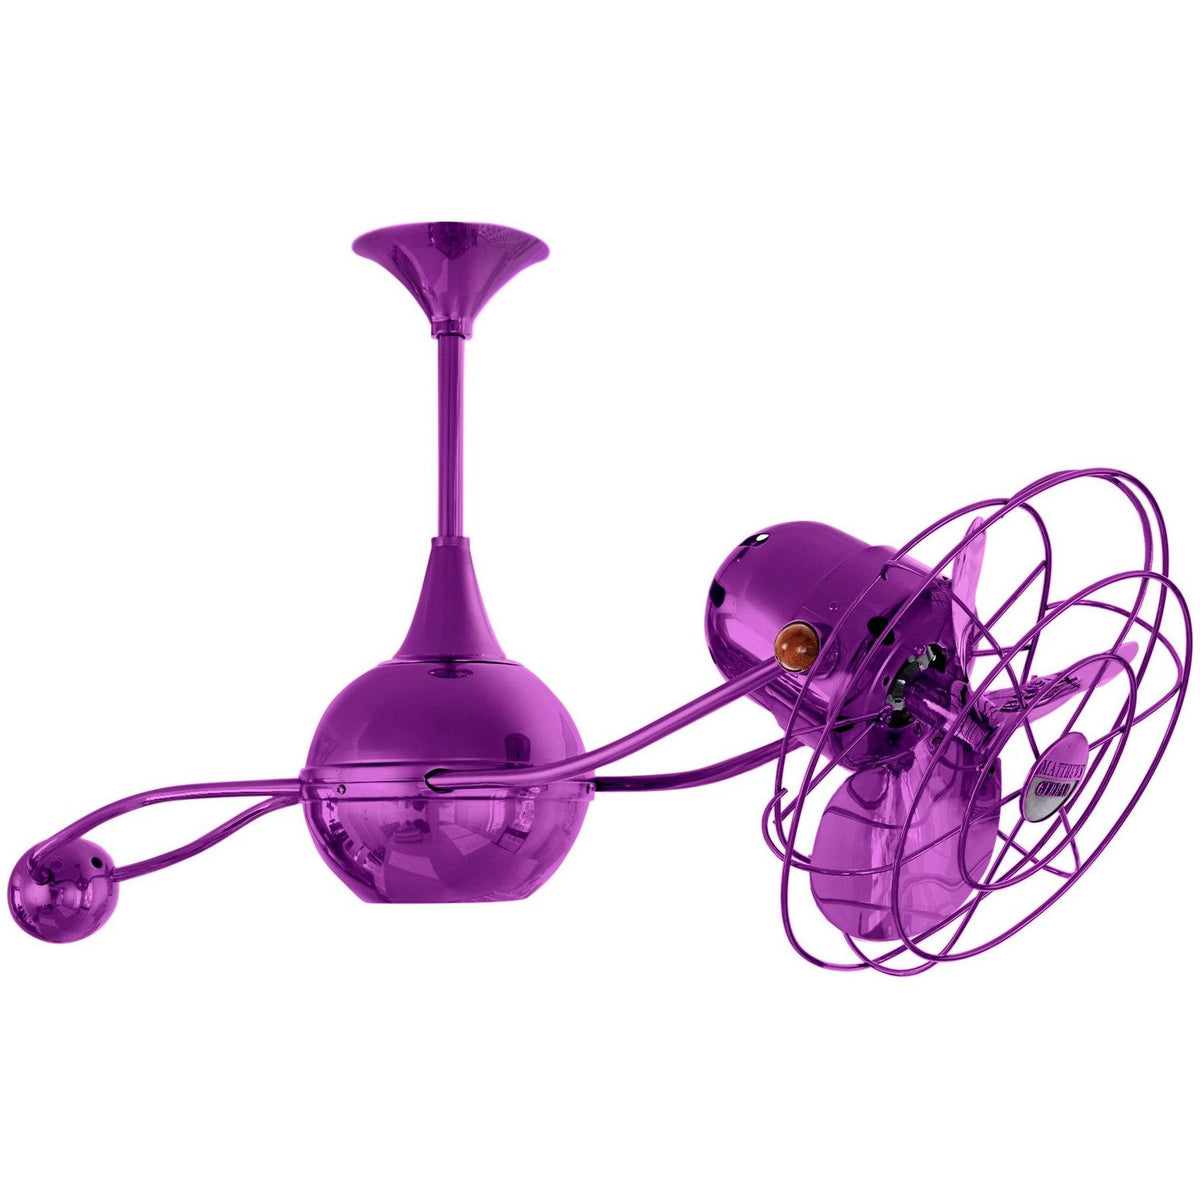 Matthews Fan Company - B2K-LTPURPLE-MTL - 40"Ceiling Fan - Brisa 2000 - Light Purple